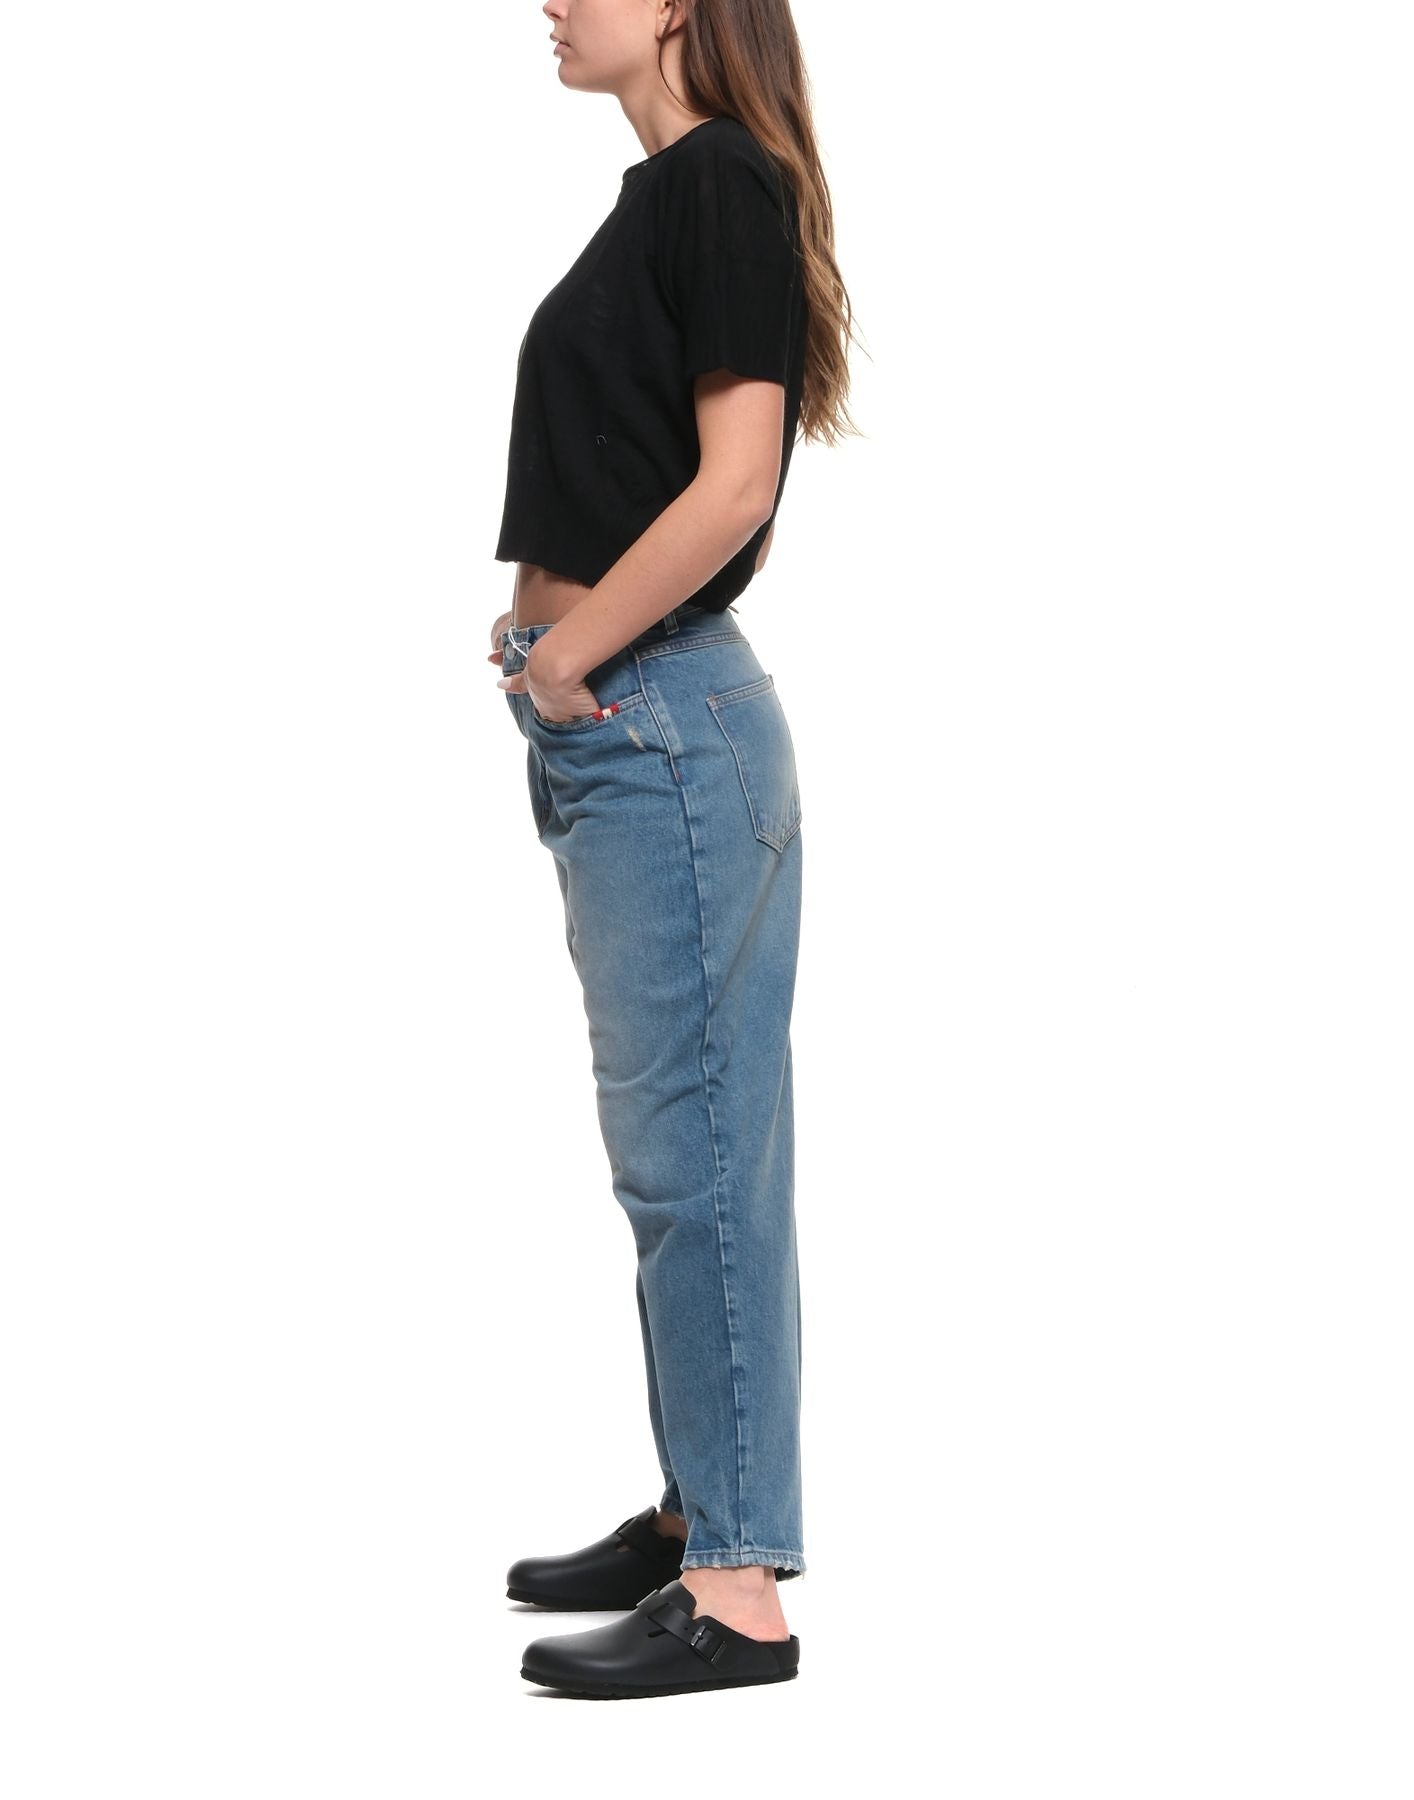 여자를위한 티셔츠 CFDTRW5403 10 검은 색 TRANSIT